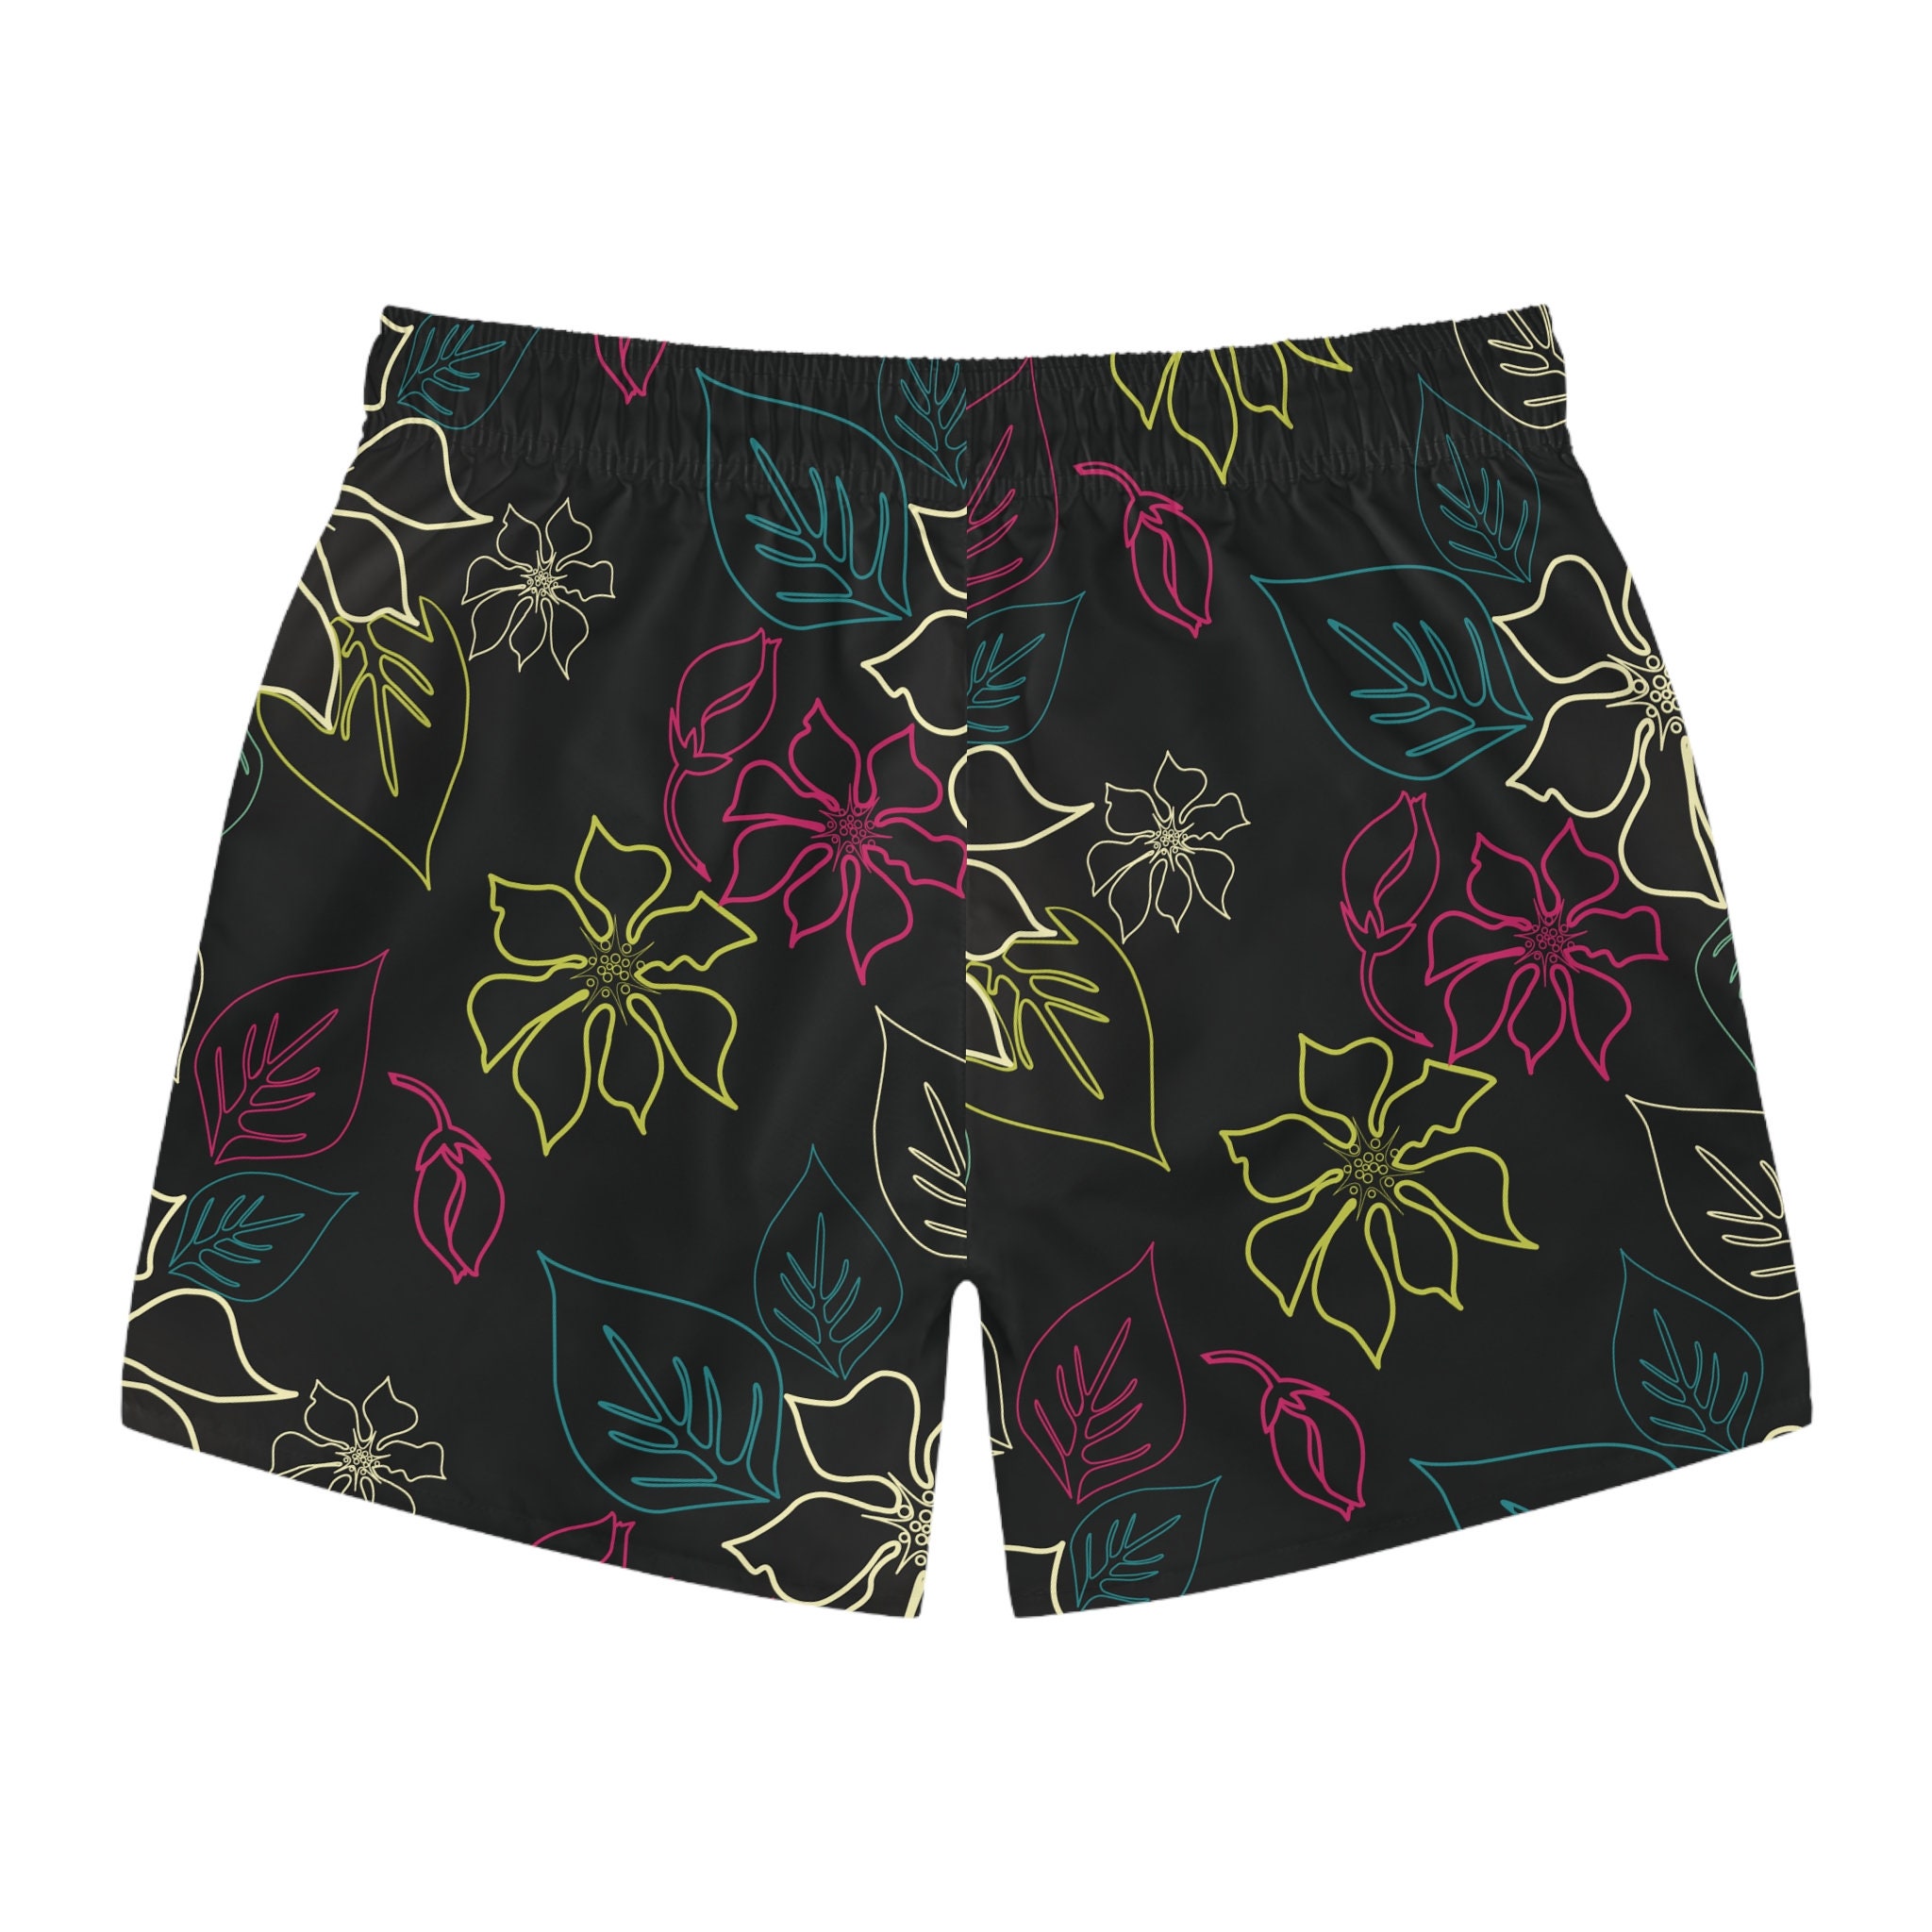 Discover 夏休み ハワイアン ショートパンツ メンズ 3Dショートパンツ 可愛いギフト 男性用ギフト 夏ファッション Summer Travel Vacation Shorts